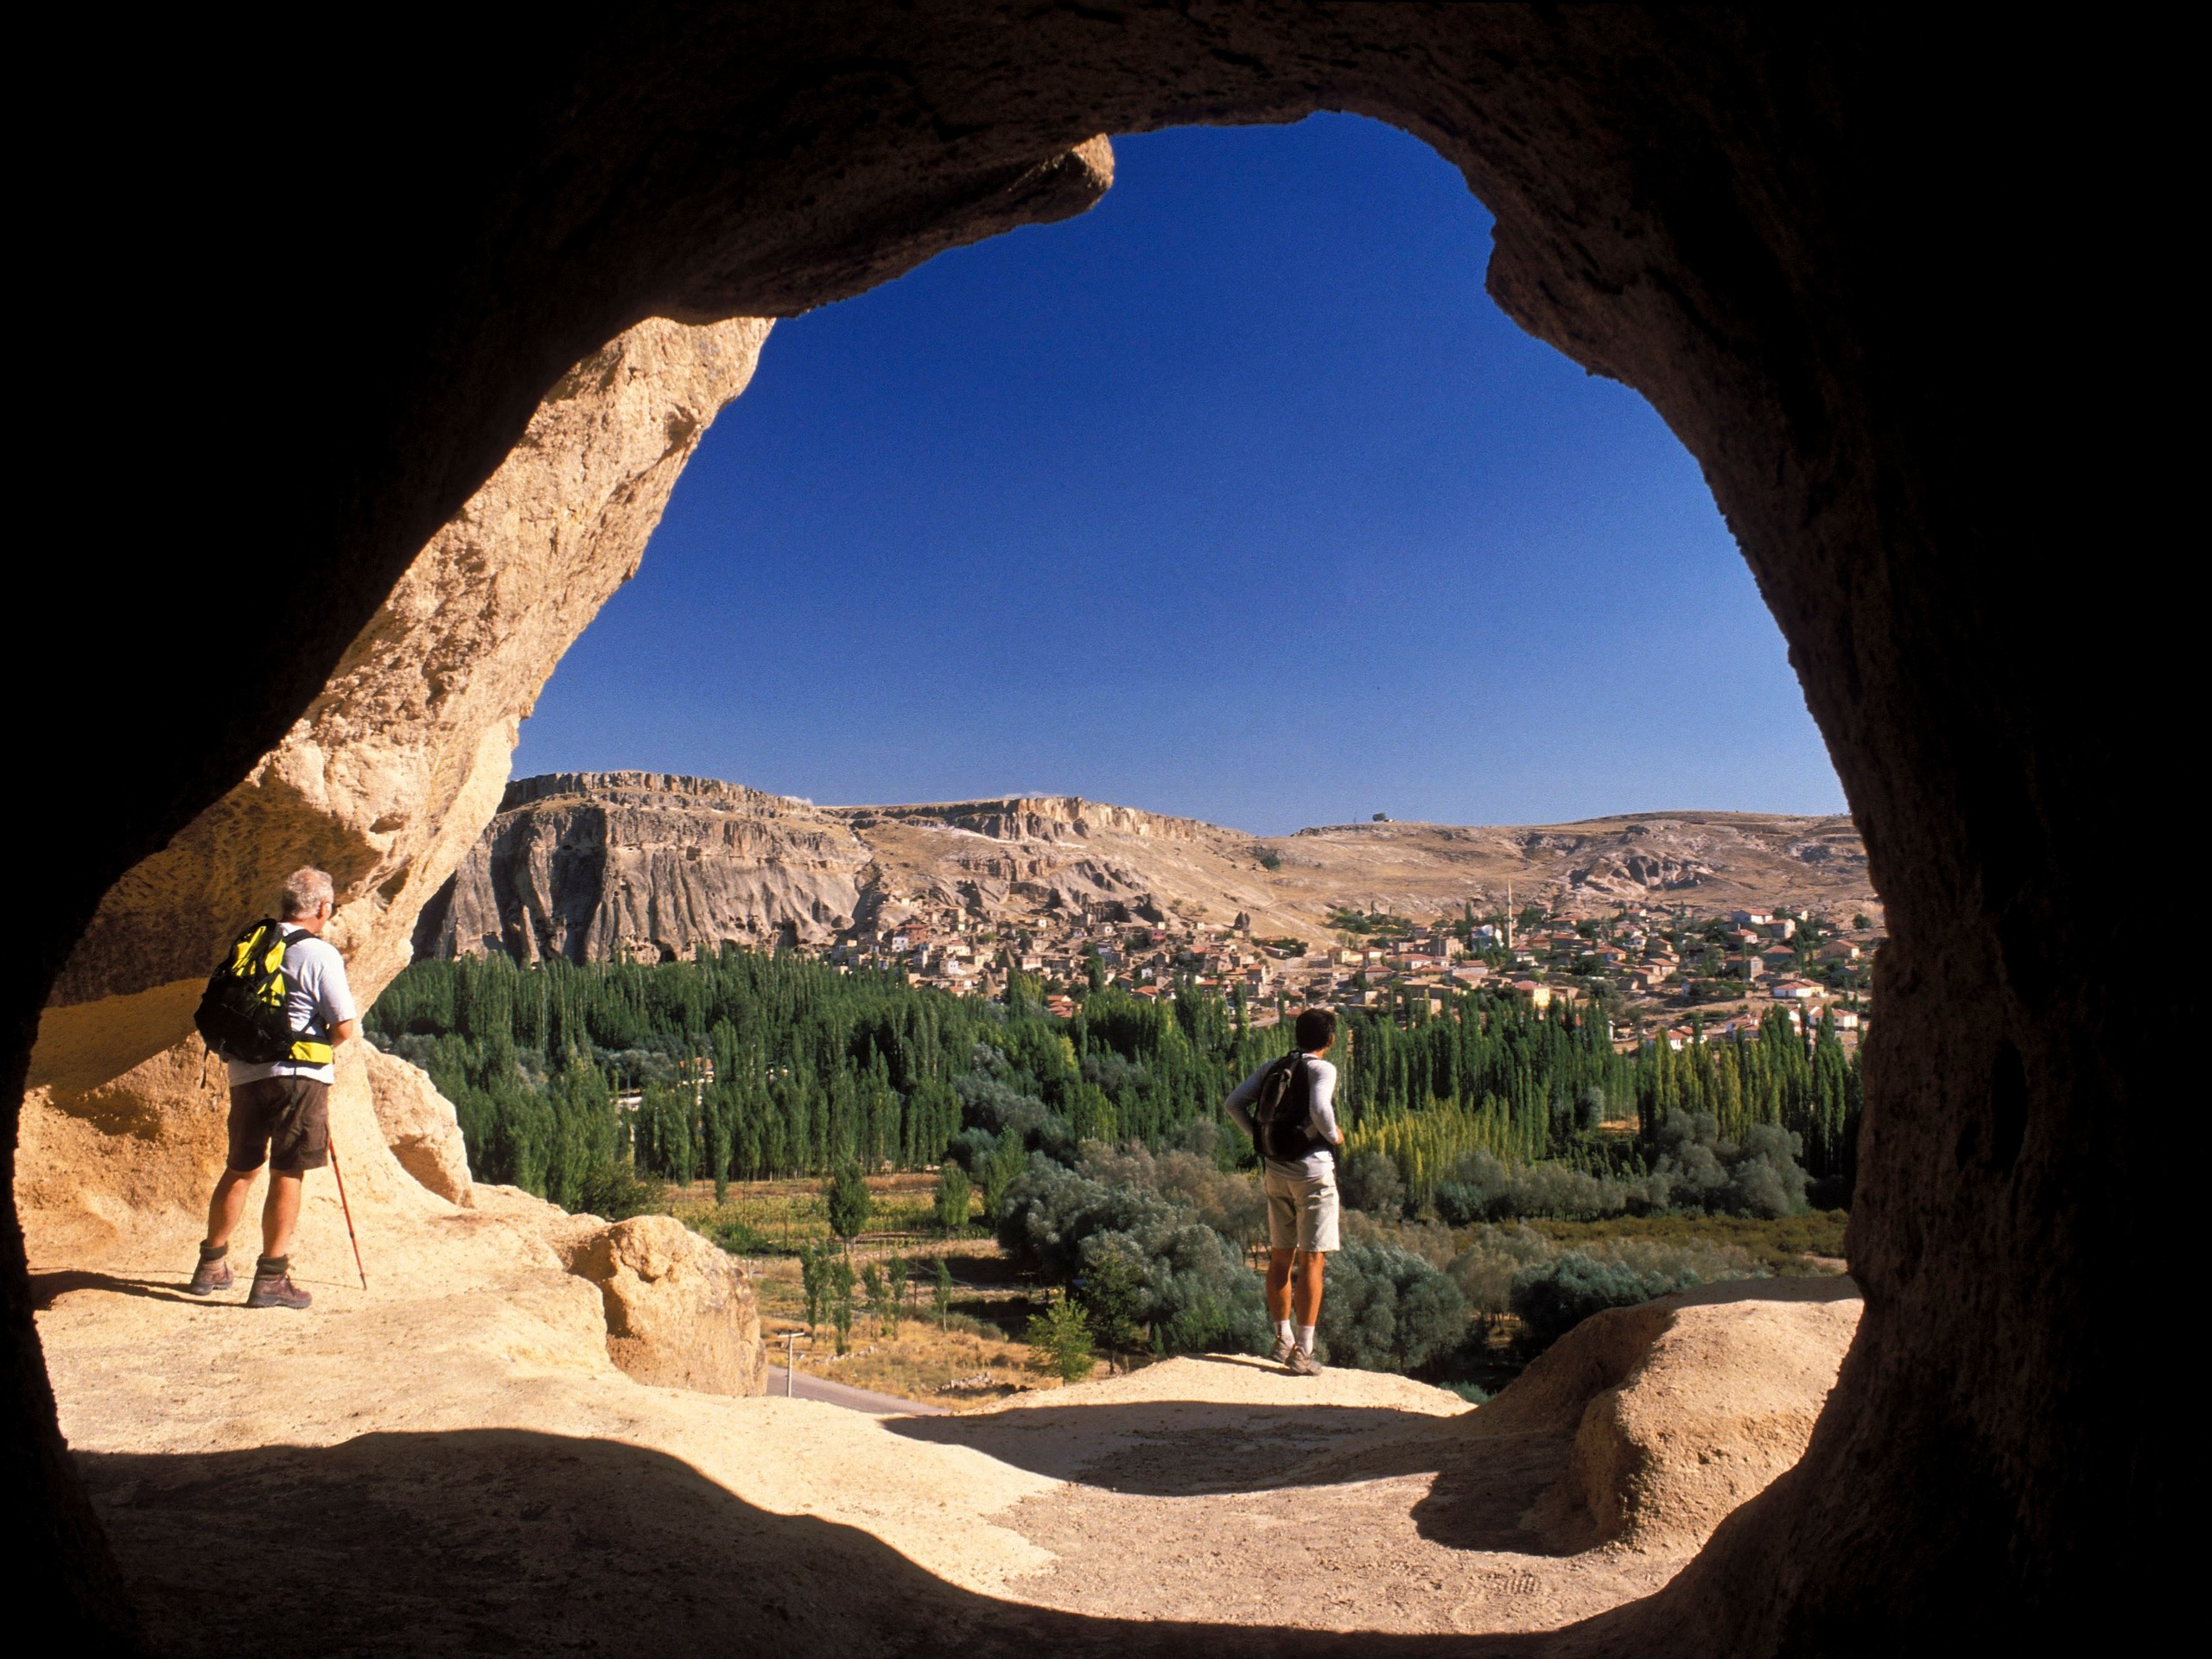 Overlook in Cappadocia